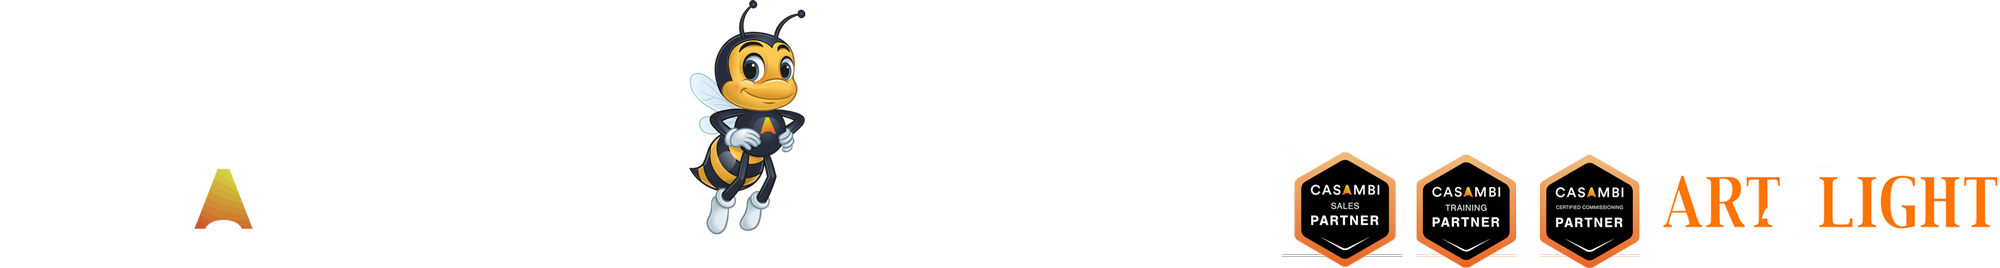 Casam-Bee